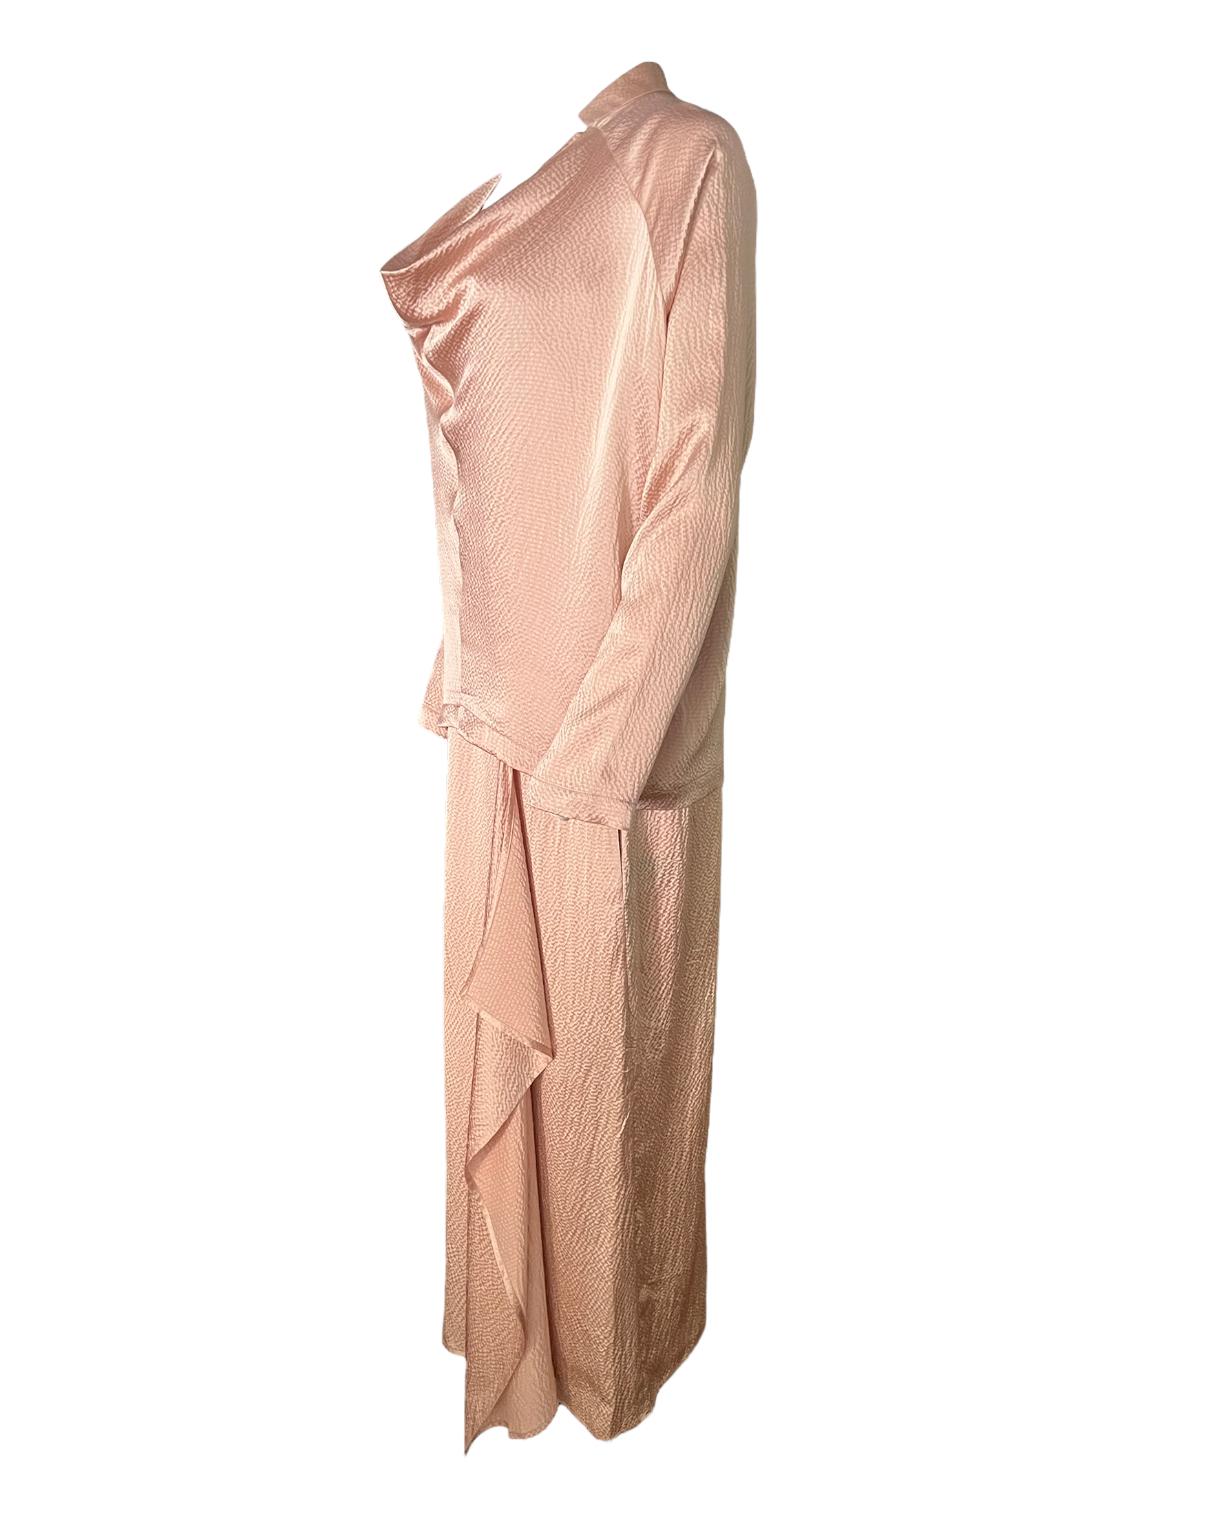 La robe :
- Longueur du plancher
- Sans manches
- Encolure ras du cou
- Avec des poches de chaque côté
Mesures : longueur : 53,5